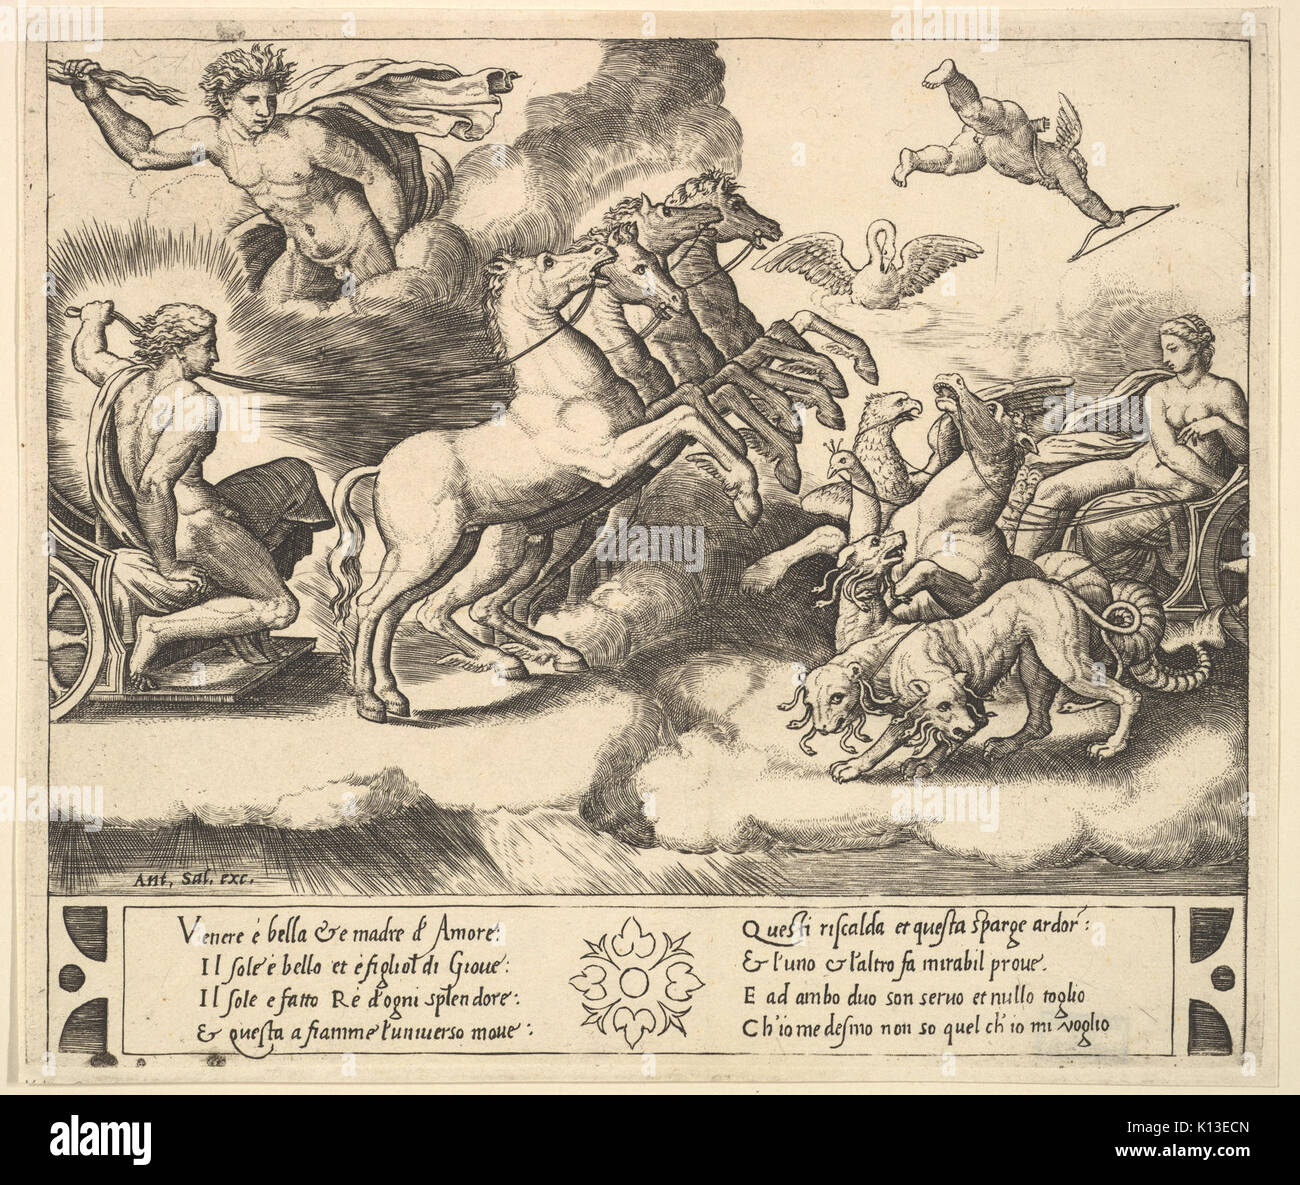 Apollo nel suo cavallo e carro a sinistra, sopra di lui al di sopra di Giove scaglia una Thunderbolt, Venere a destra nel suo carro trainato da animali incontrati DP824408 Foto Stock